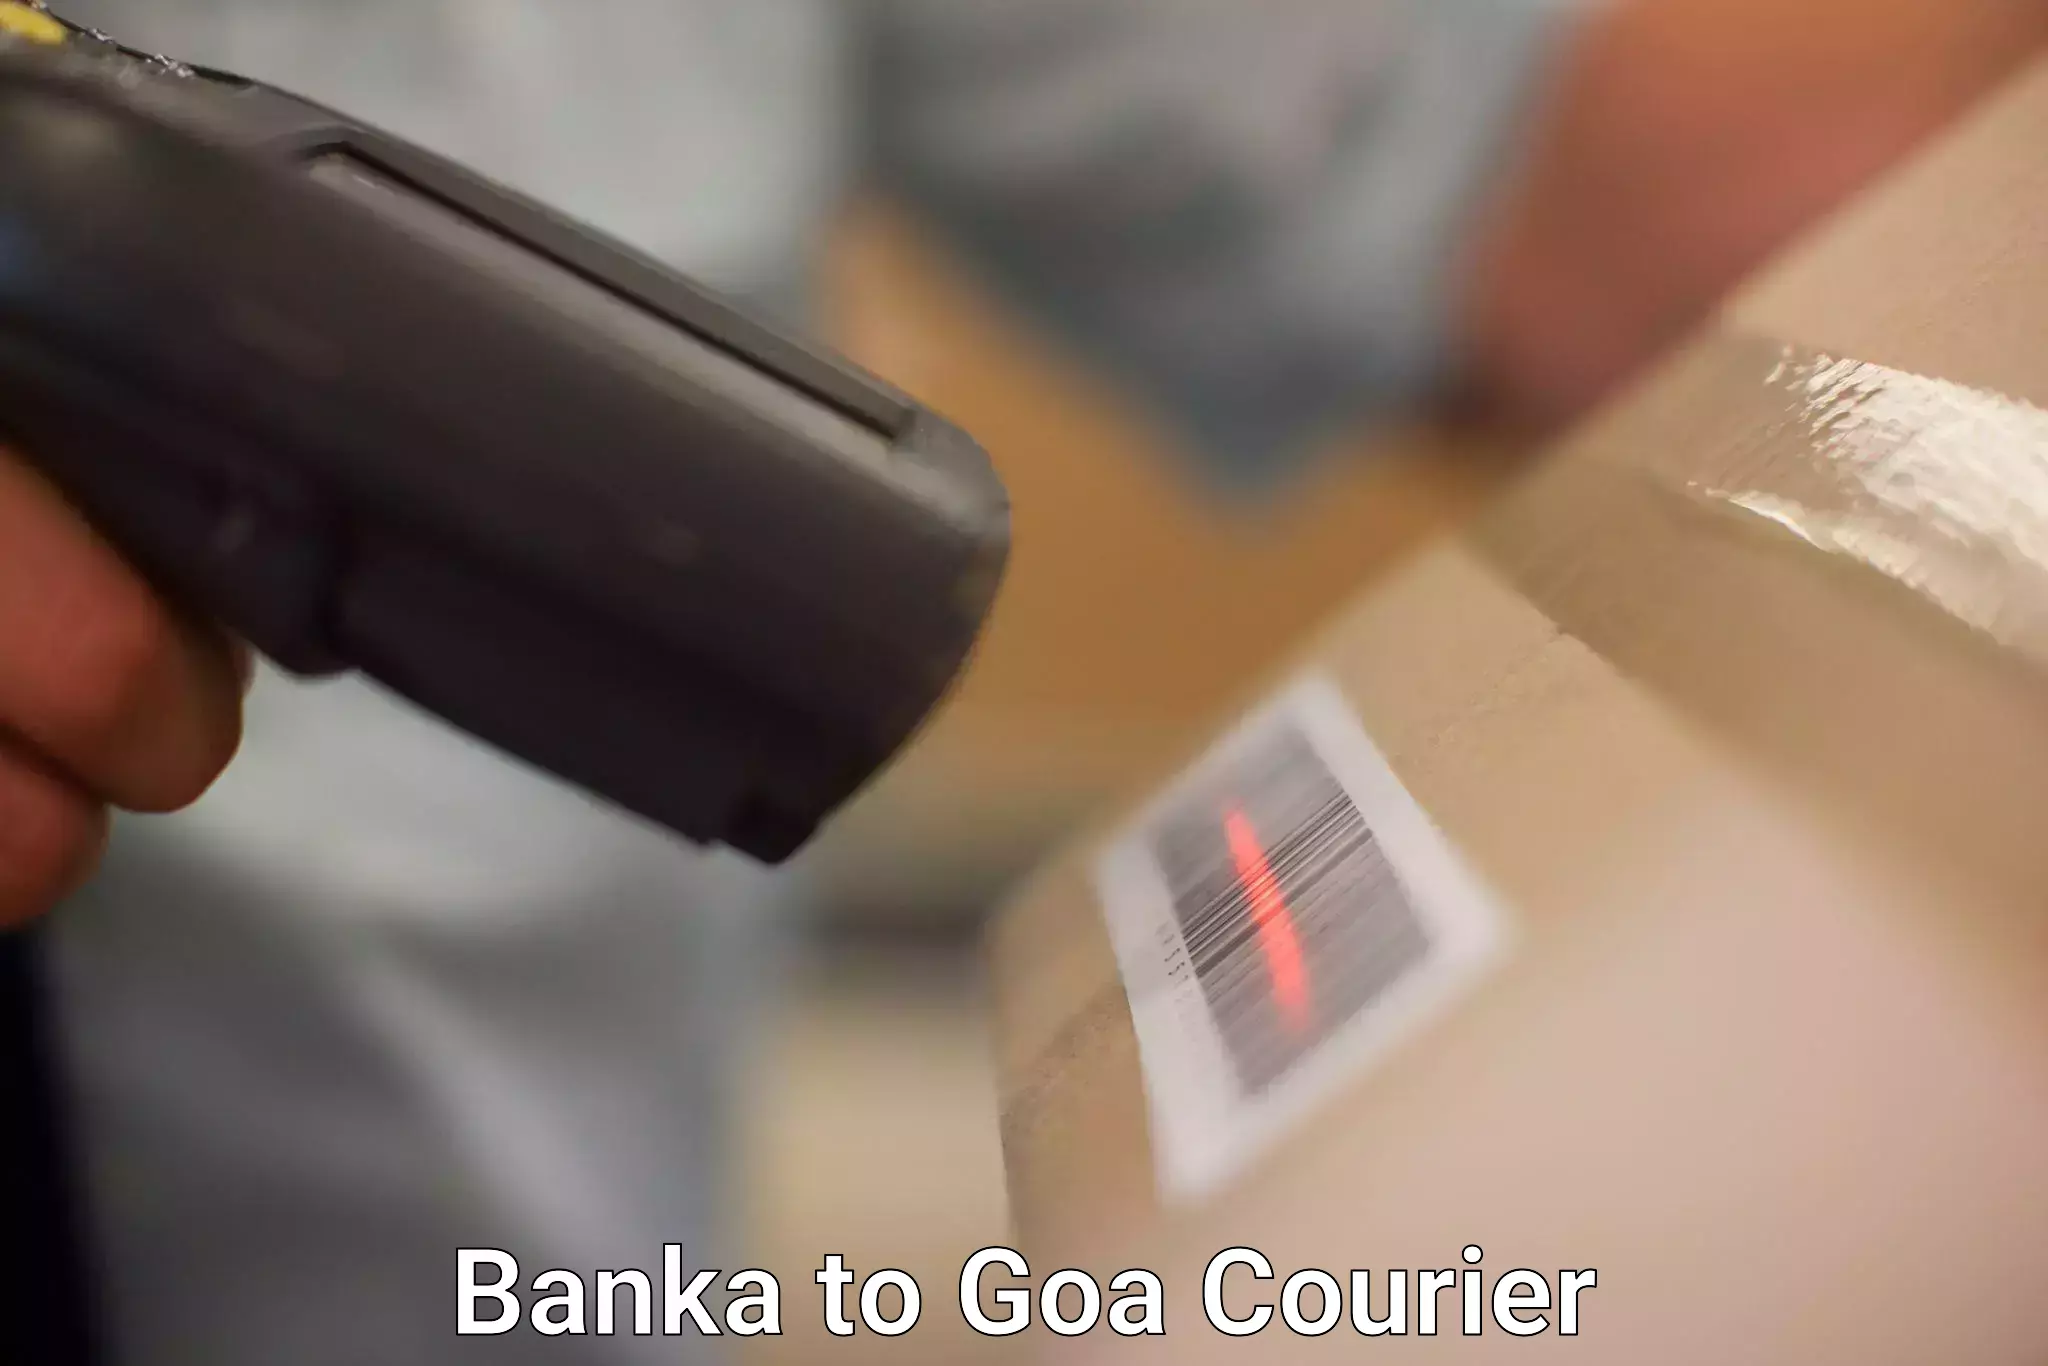 Global logistics network Banka to NIT Goa